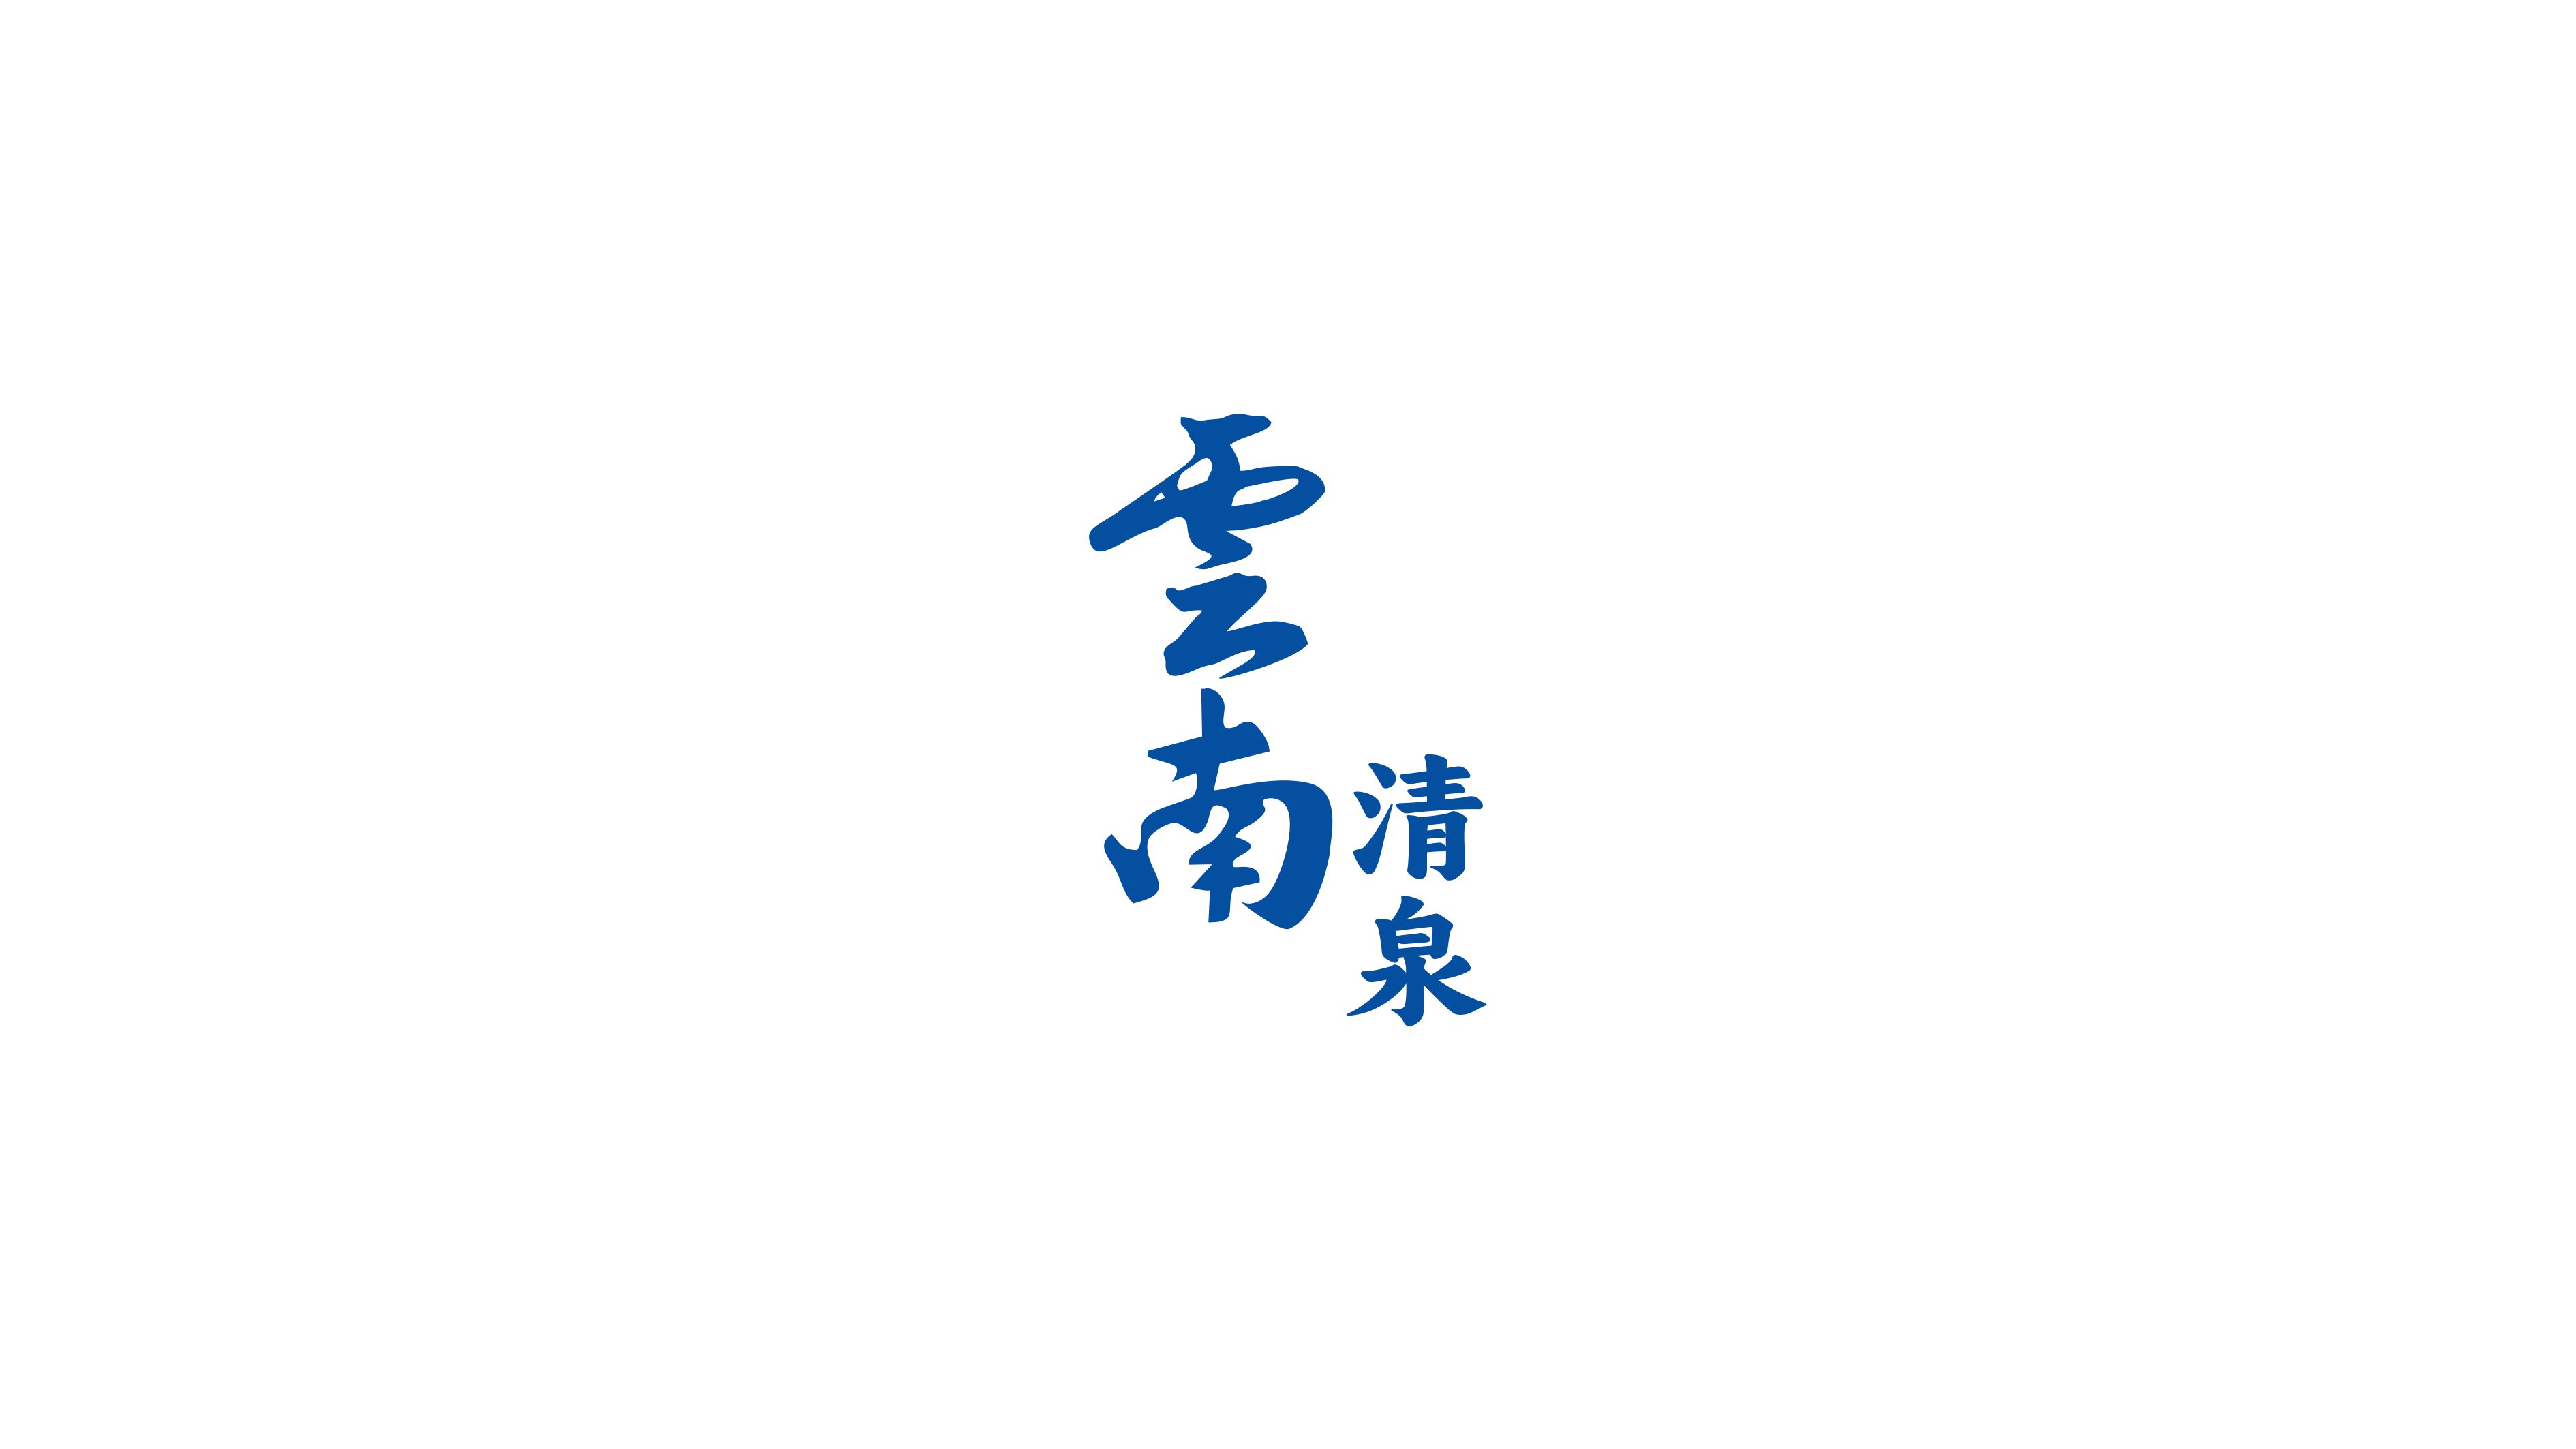 礦泉水字體logo設計